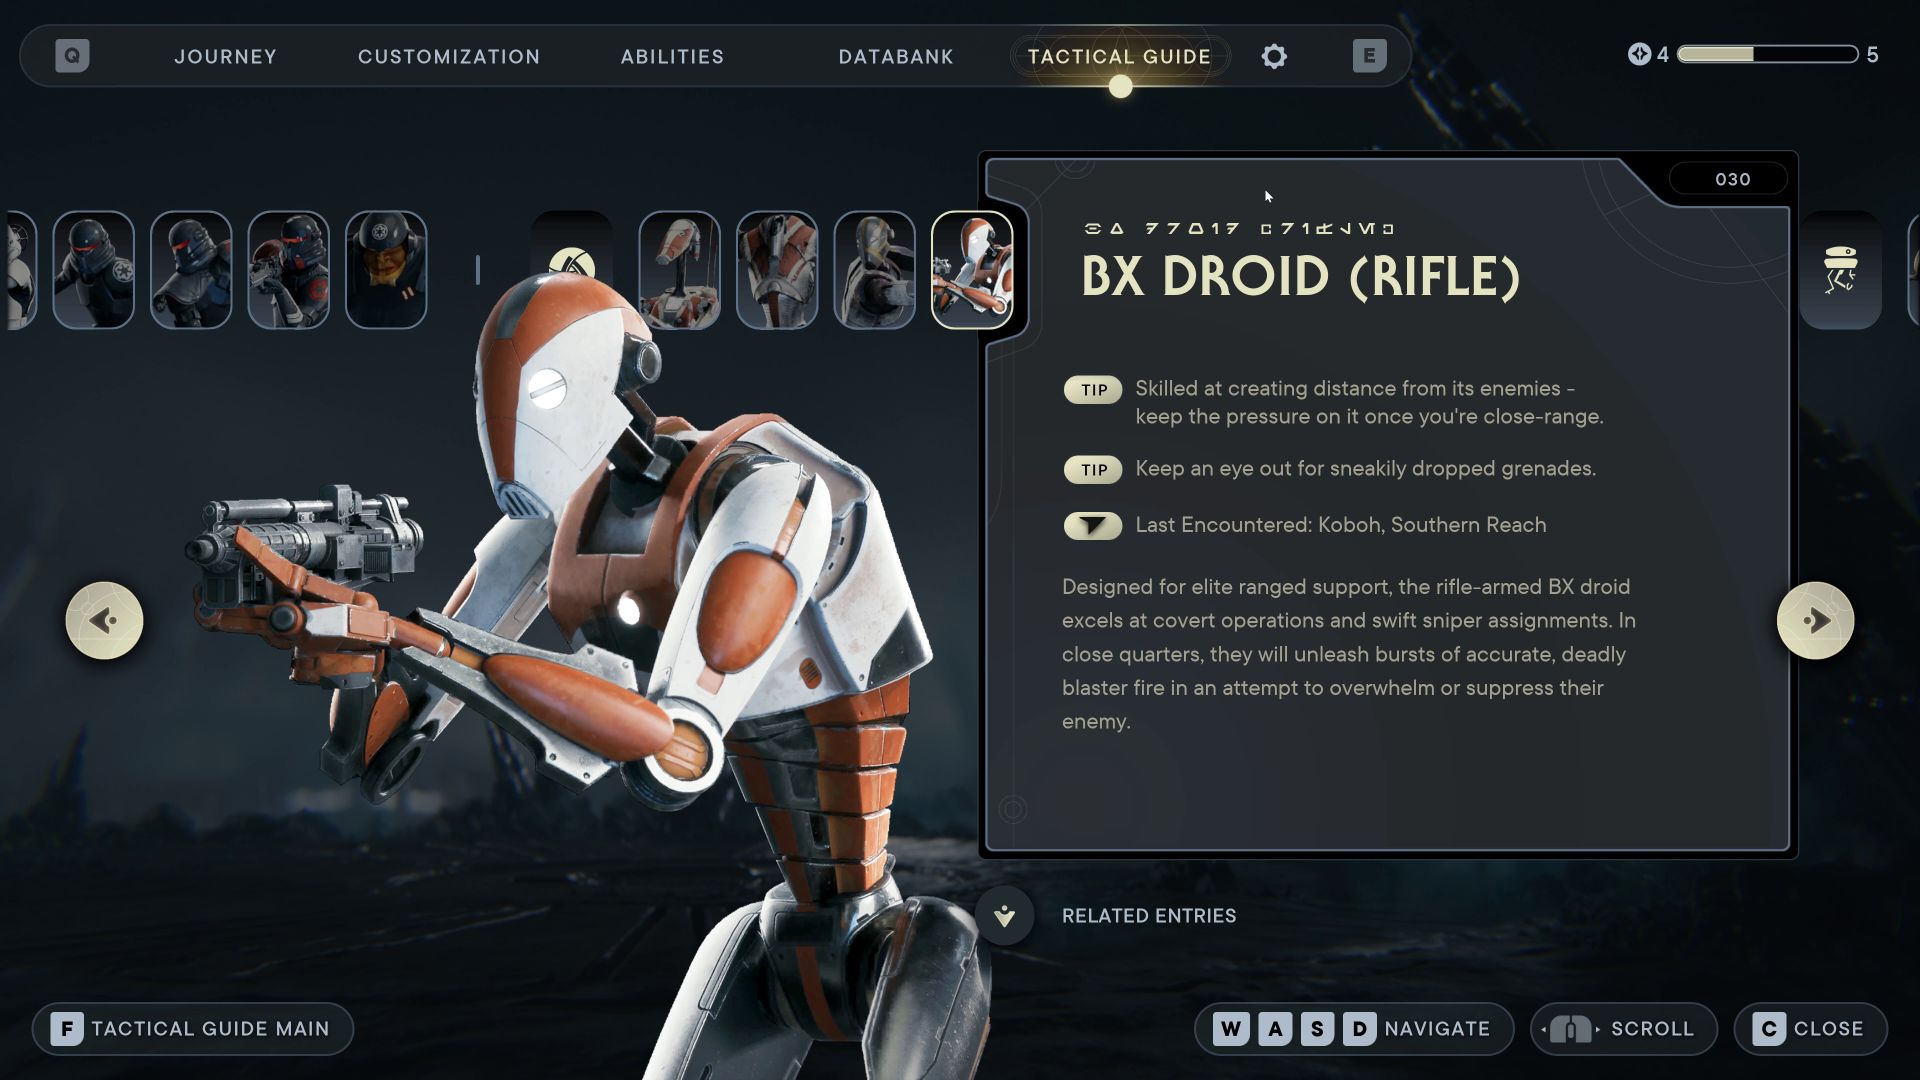 BX Droid (Rifle) (030) Star Wars Jedi Survivor Tactical Guide Update - Star Wars Jedi Survivor